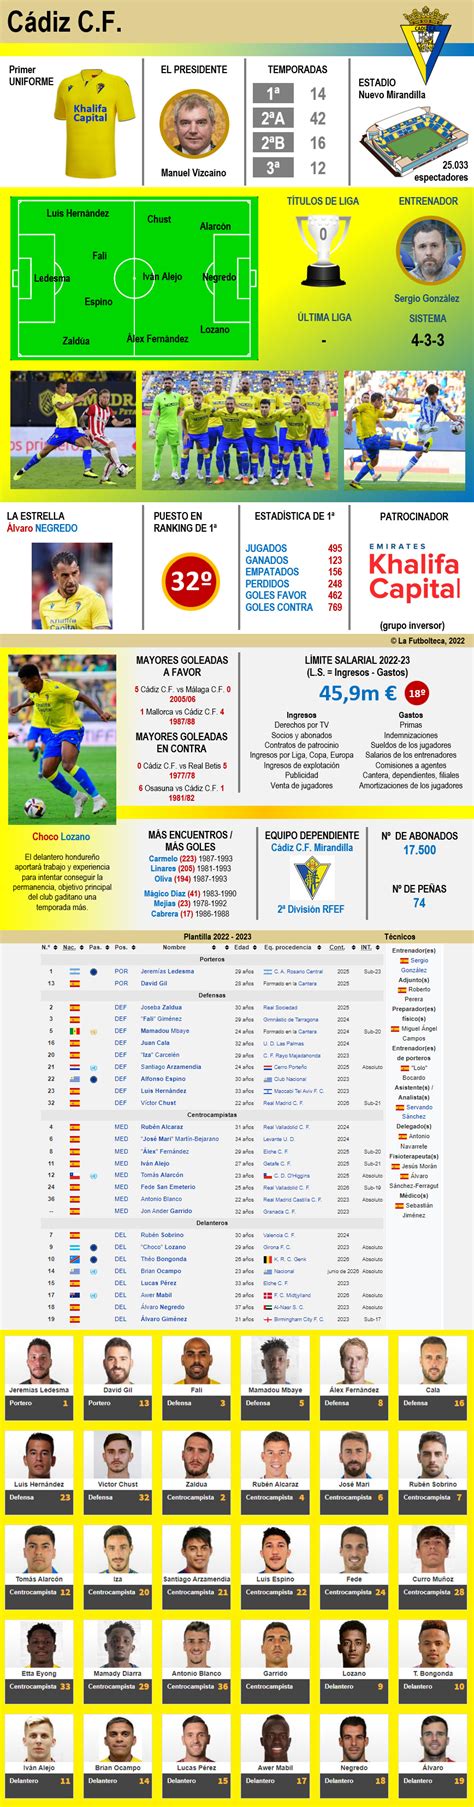 Calificaciones de Cádiz Club de Fútbol vs Barcelona: Una Guía Detallada para Fa